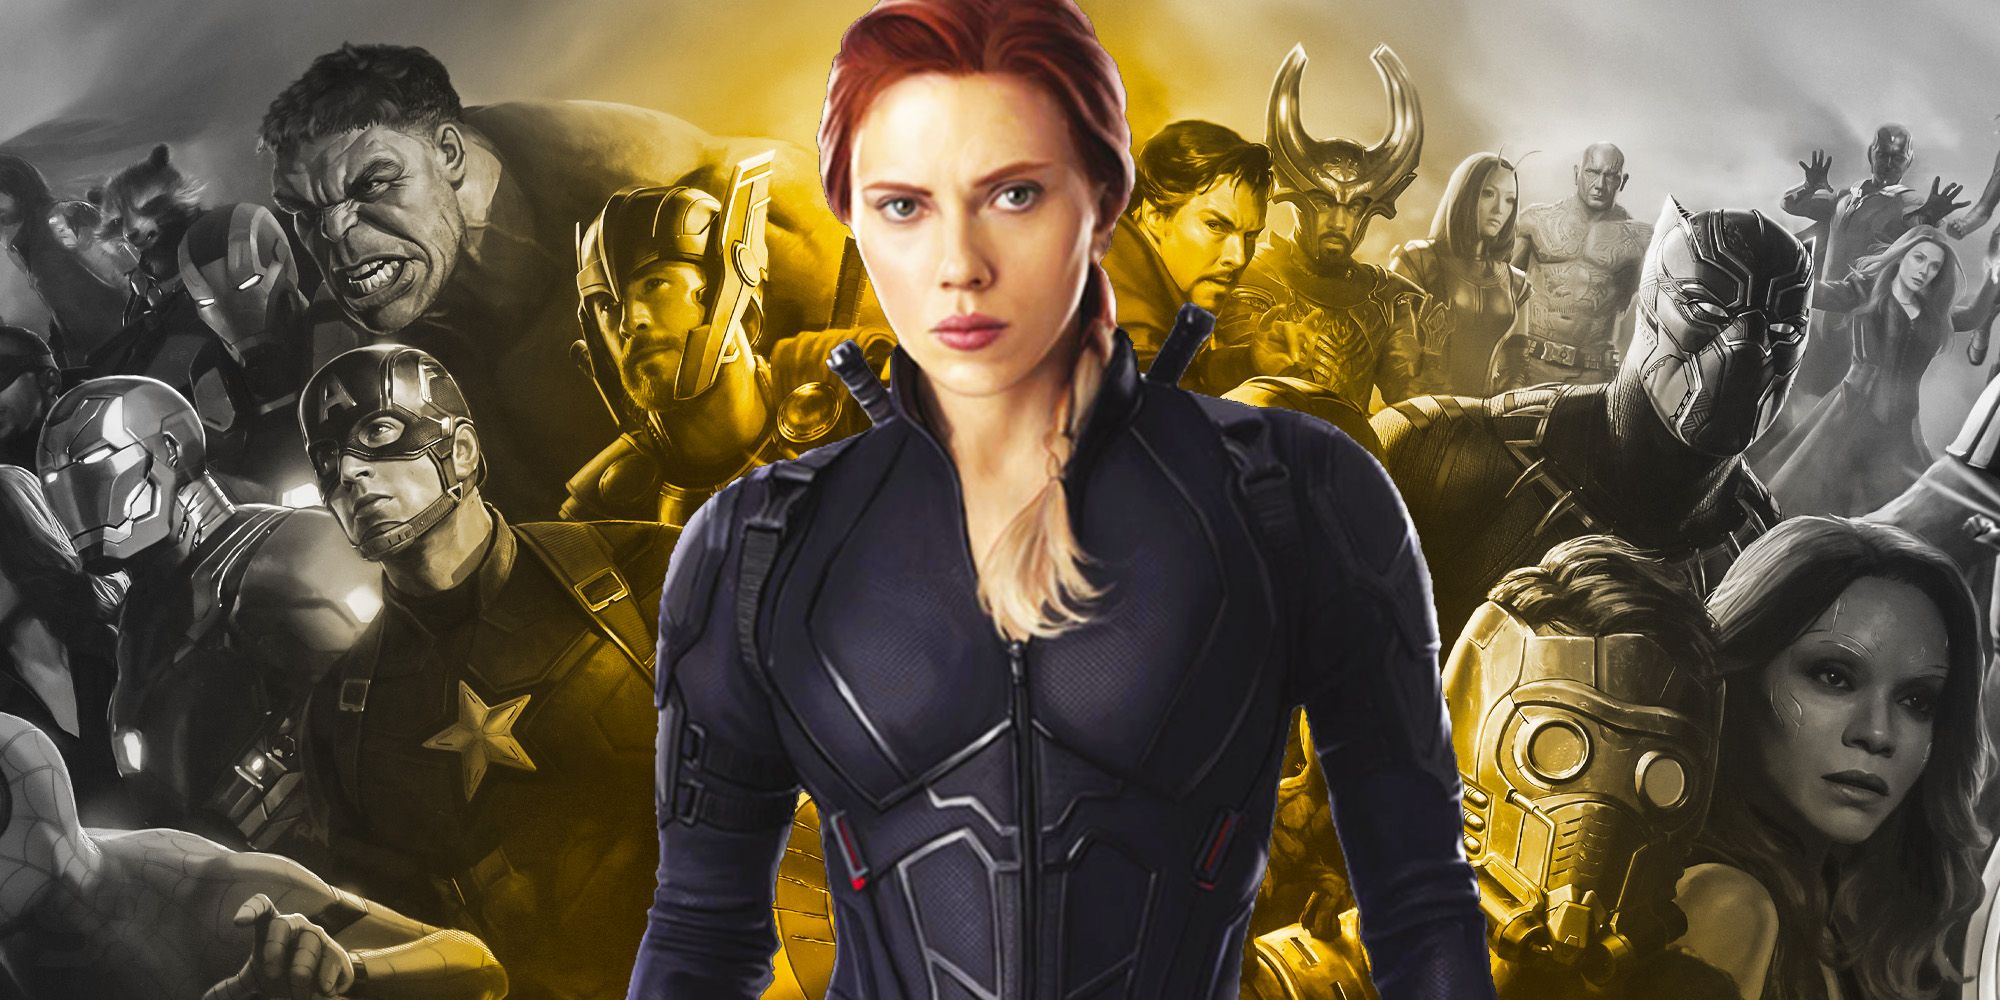 MCU Honors Black Widow's Sacrifice in Avengers